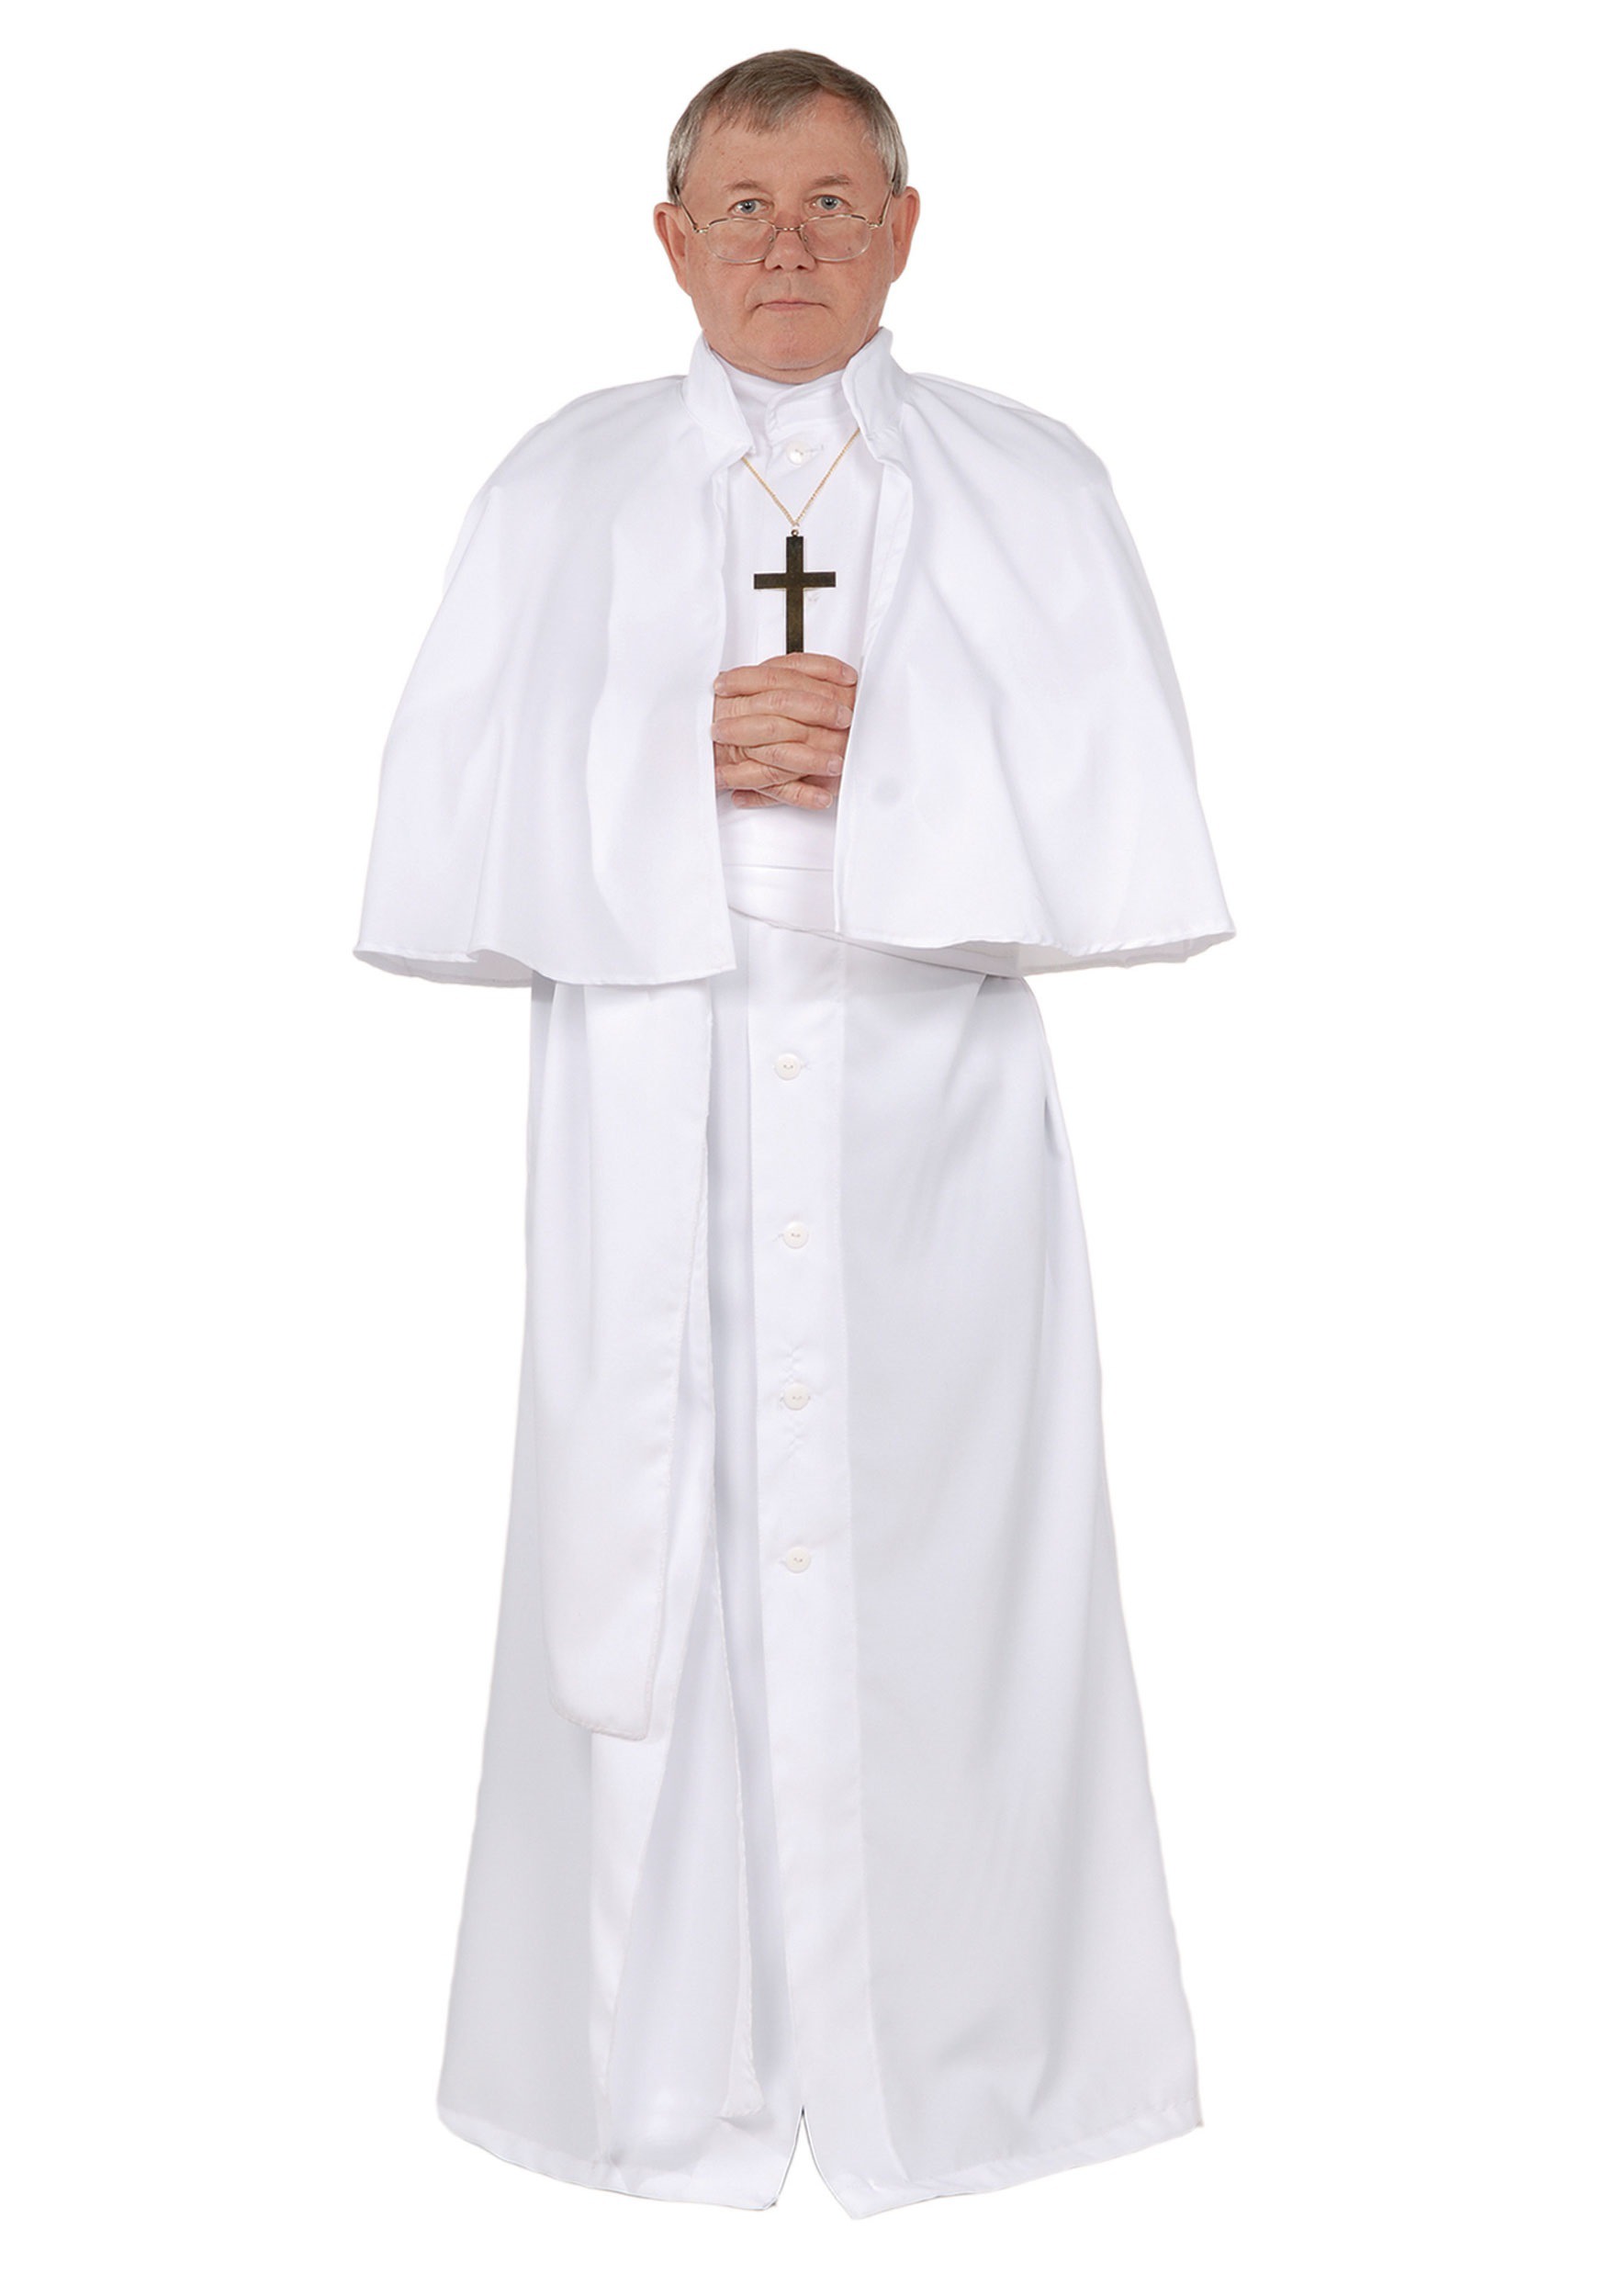 Pope Men's Fancy Dress Costume